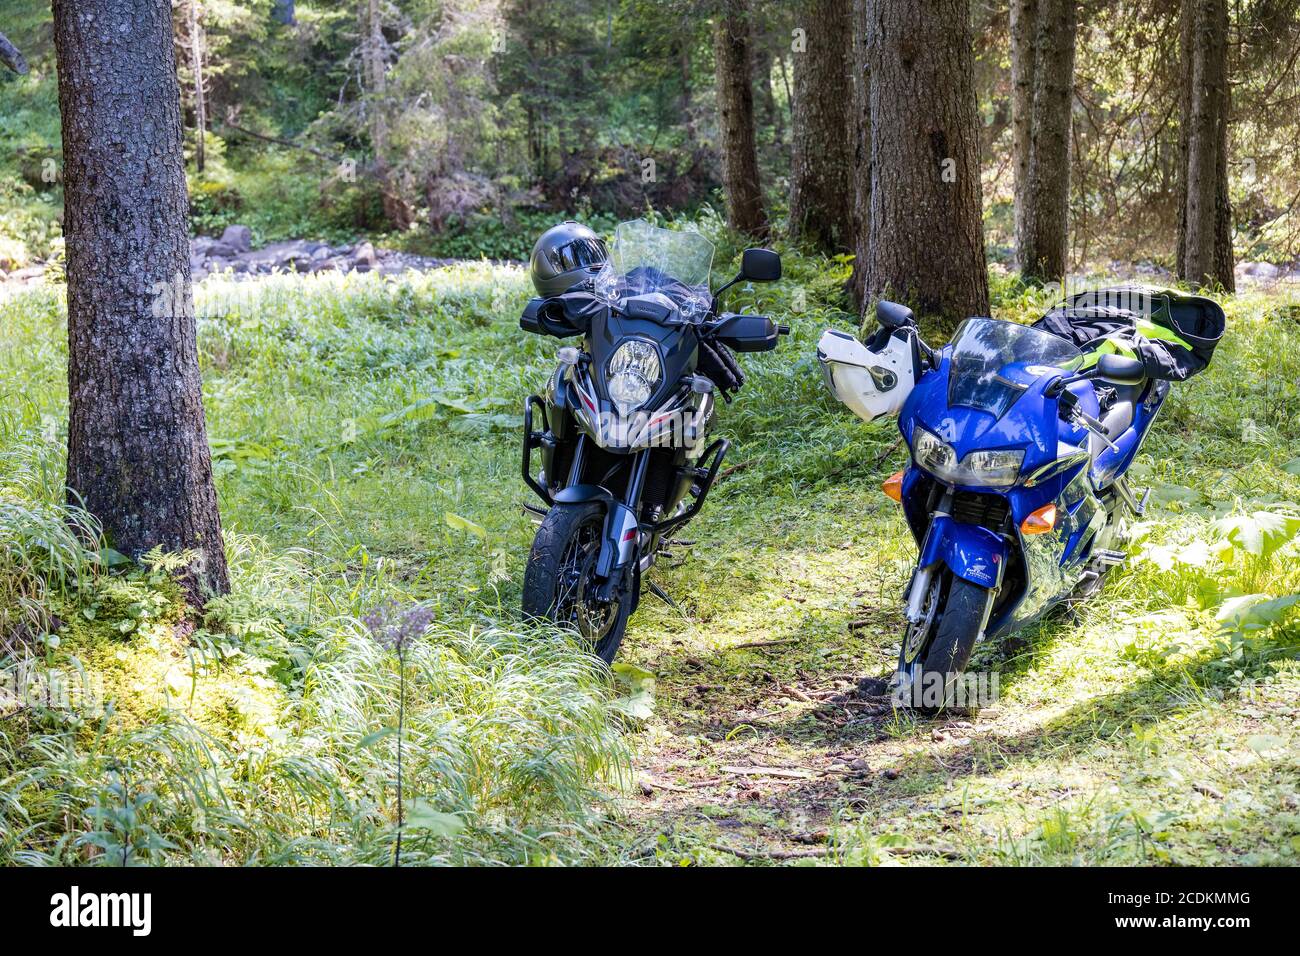 TONADICO TRENTINO/ITALY - AGOSTO 11 : due moto parcheggiate nel Parco Naturale del Paneveggio pale di San Martino in Tonadico, Trentino, Italia il 11 agosto 2020 Foto Stock